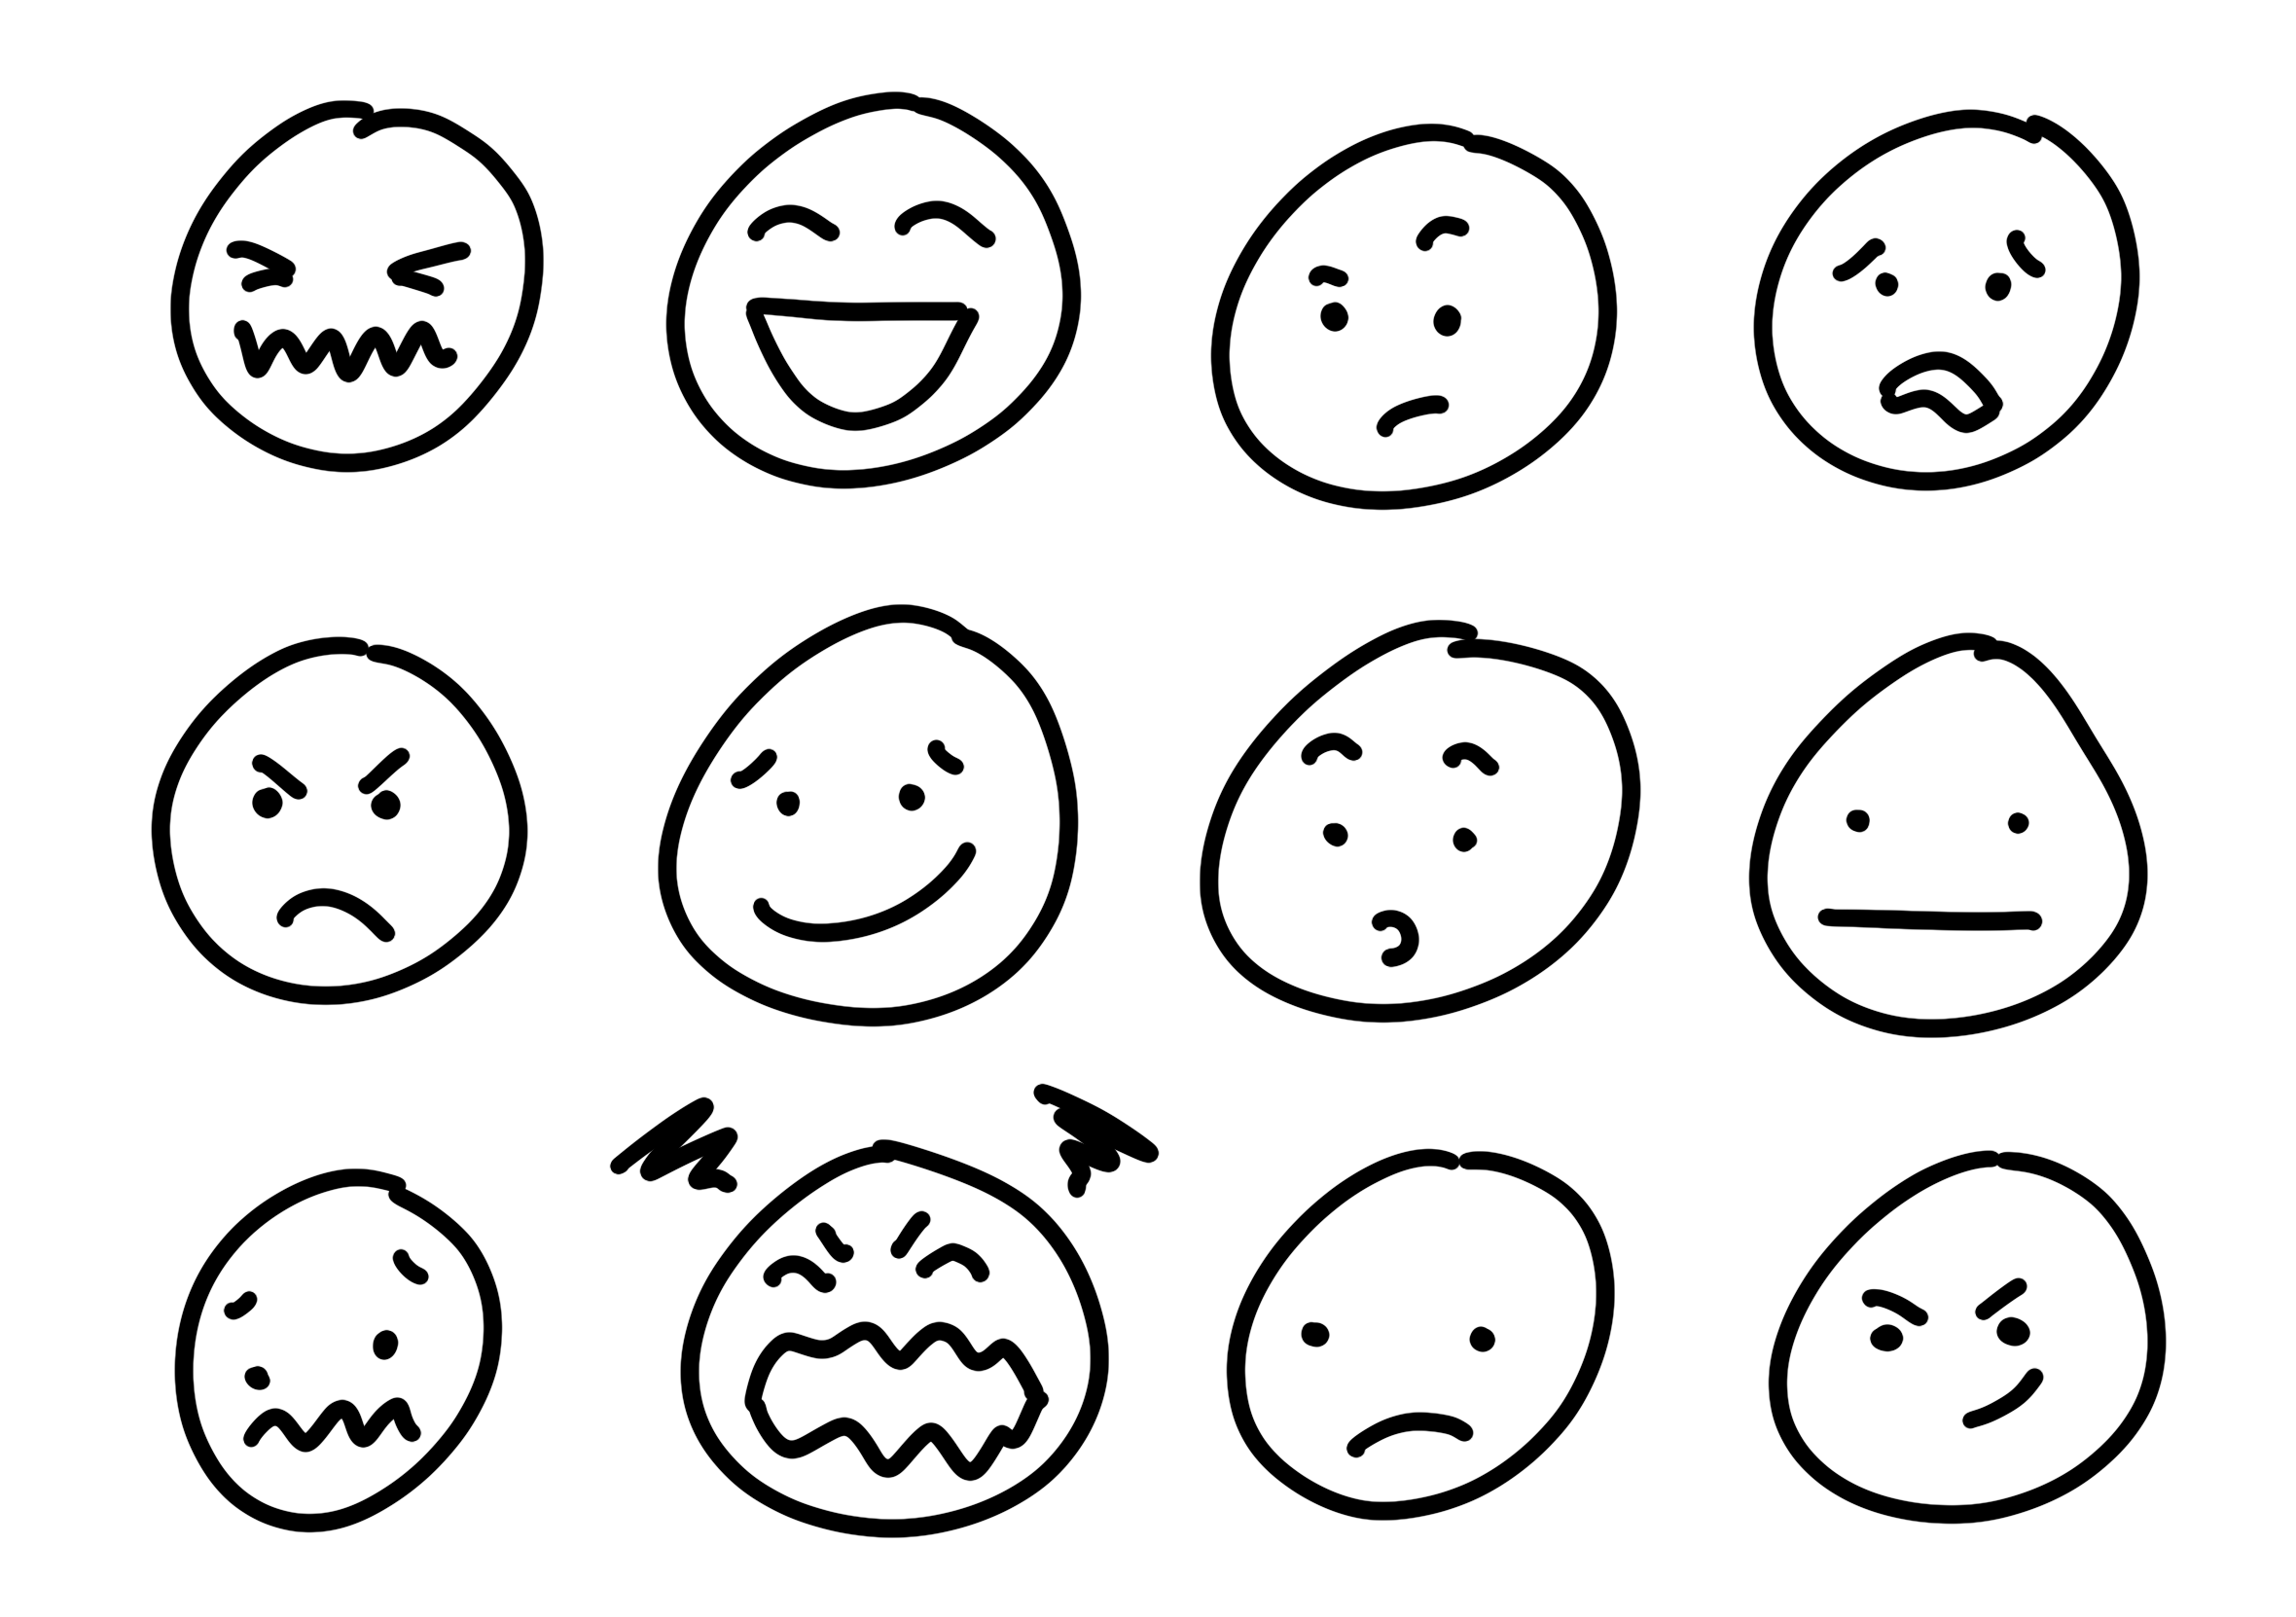 Ansiktsuttrykk og følelser